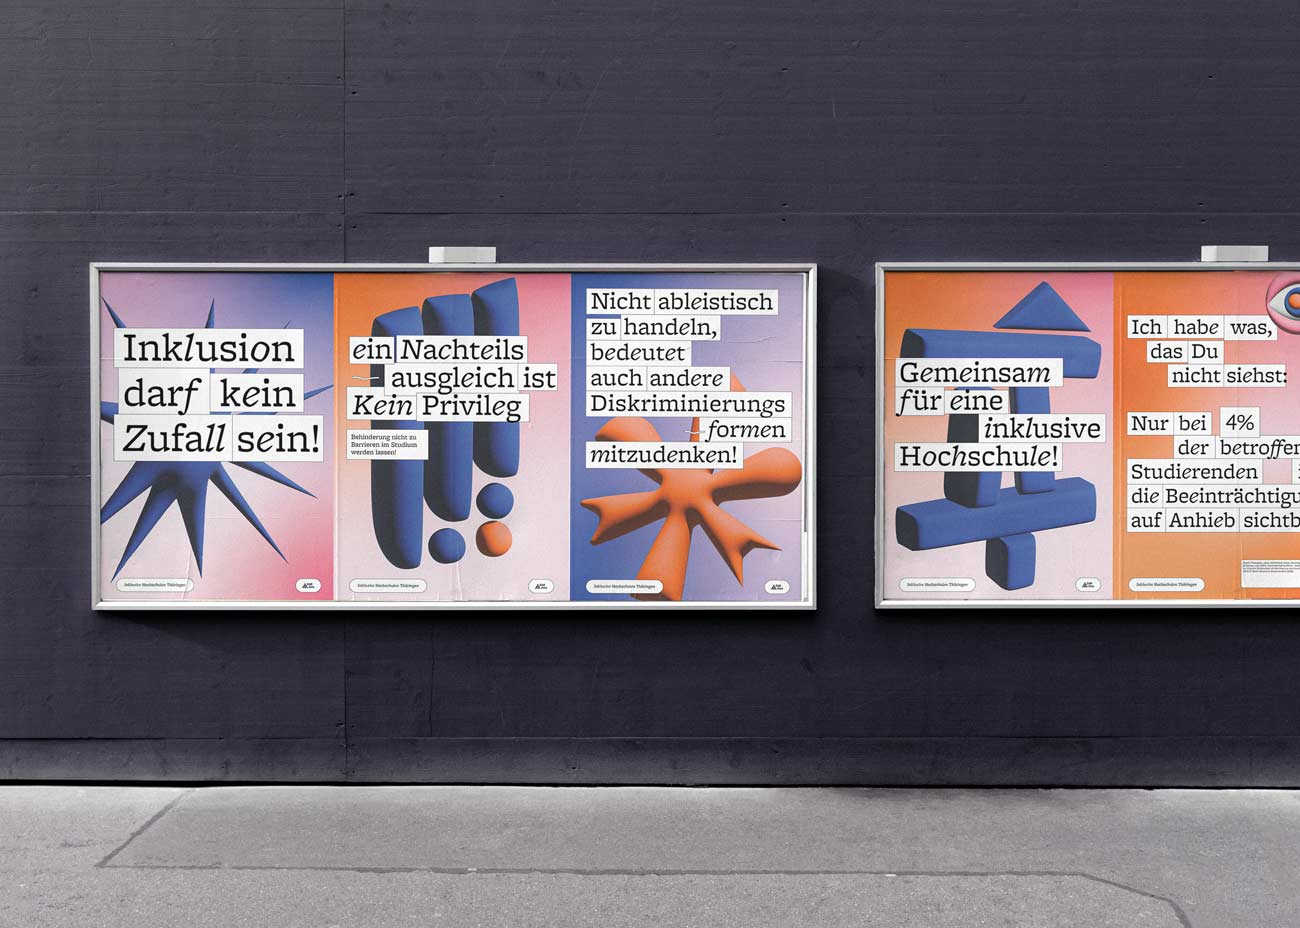 Mehrere Poster nebeneinander auf zwei großen Plakatwänden auf einer dunkelgrauen Wand. Davor grauer Betonboden.